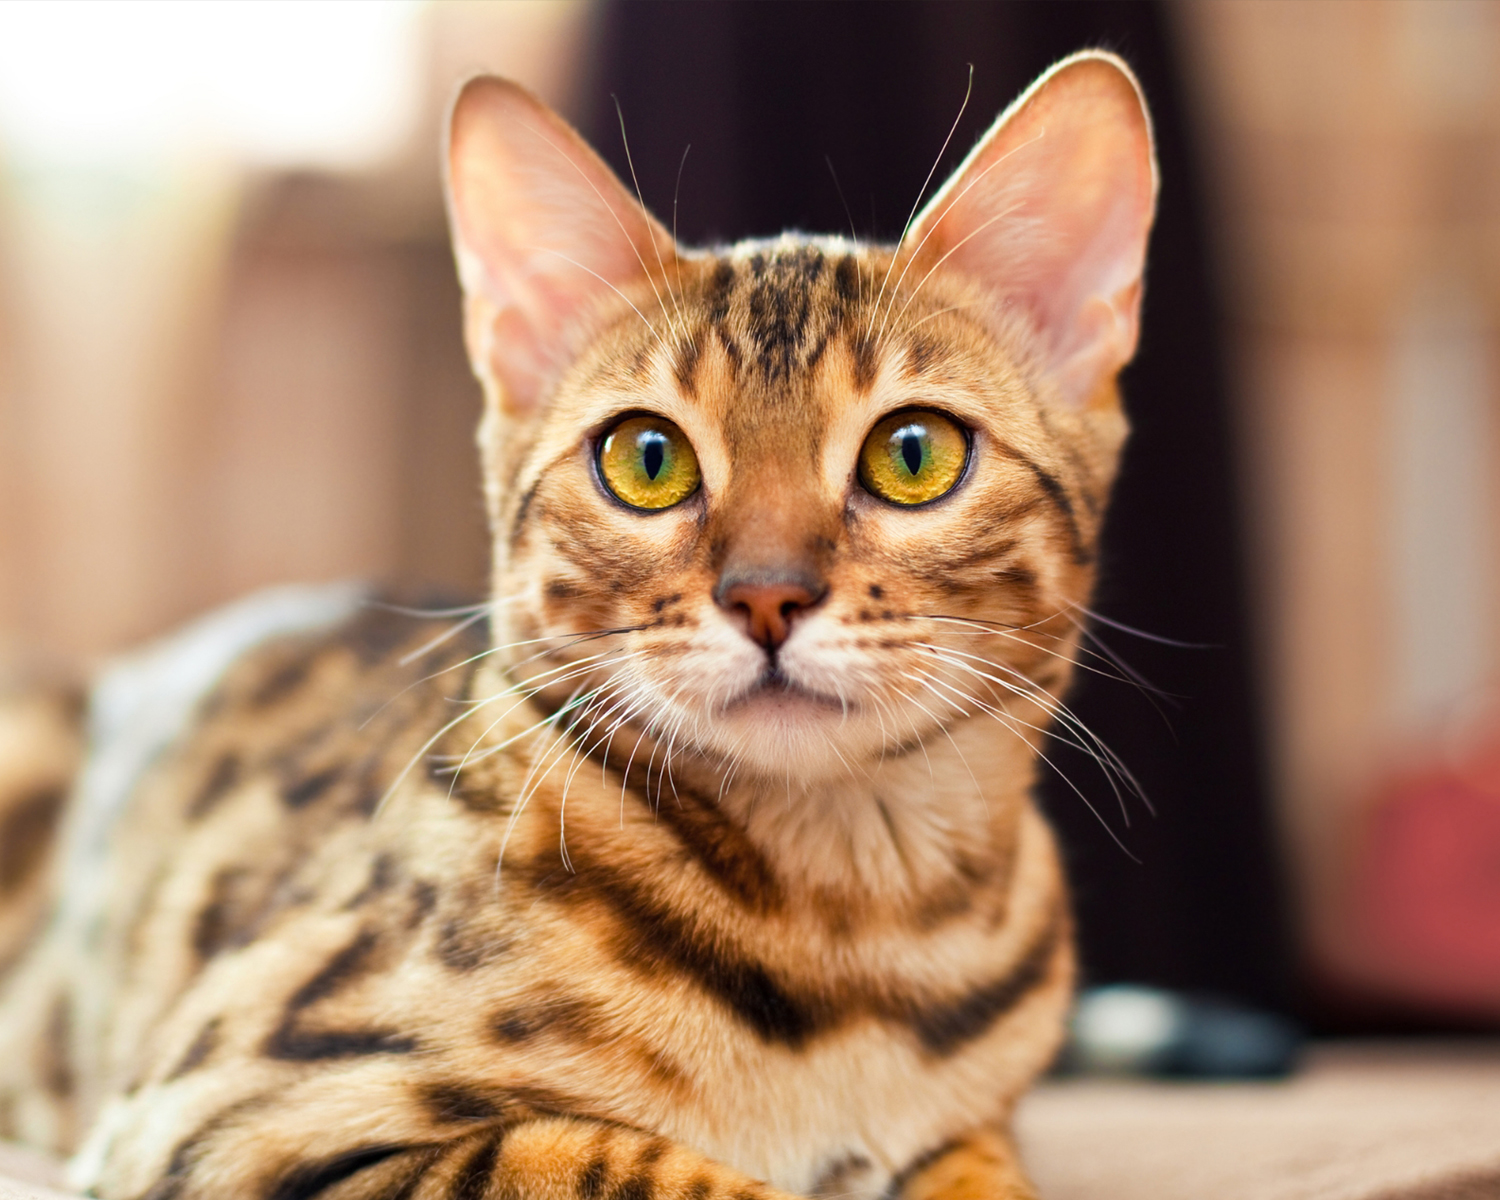 Бенгальская кошка - описание и характеристики породы, отзывы владельцев,  где купить и сколько стоит, уход и содержание и подходит ли для детей  порода.